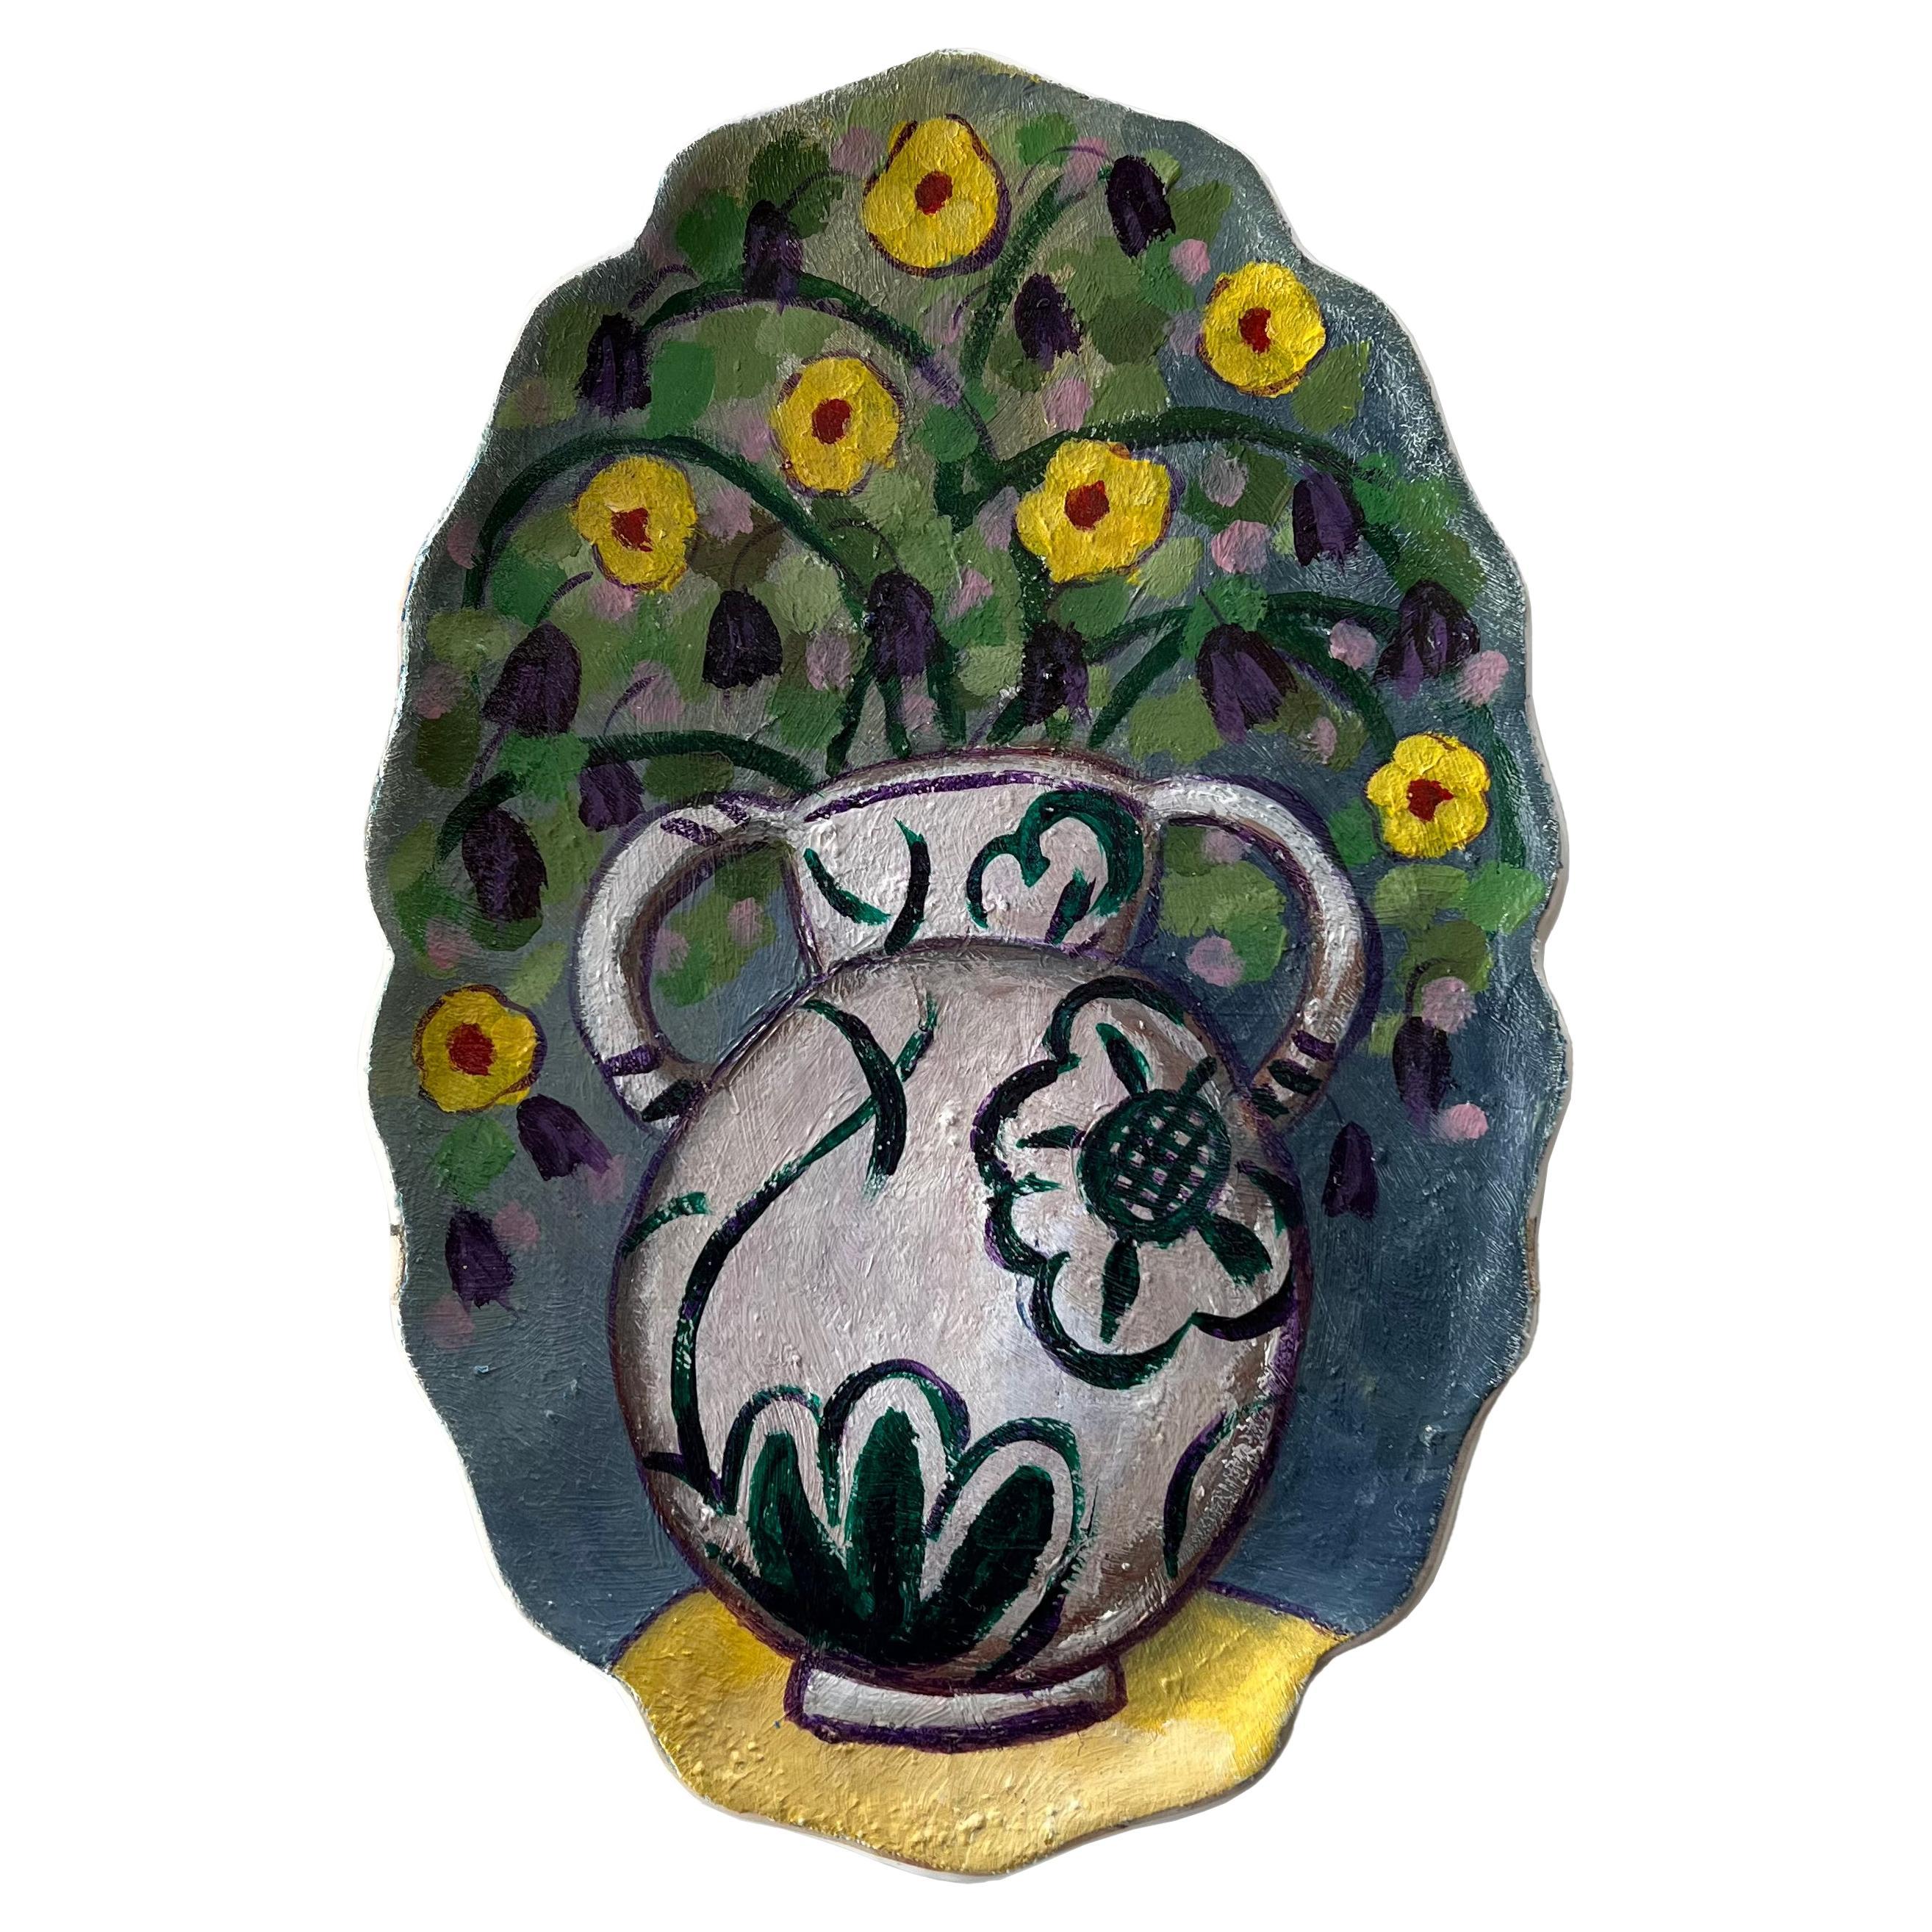 "Bouquet in Amphora Vase" - Assiette murale unique en son genre